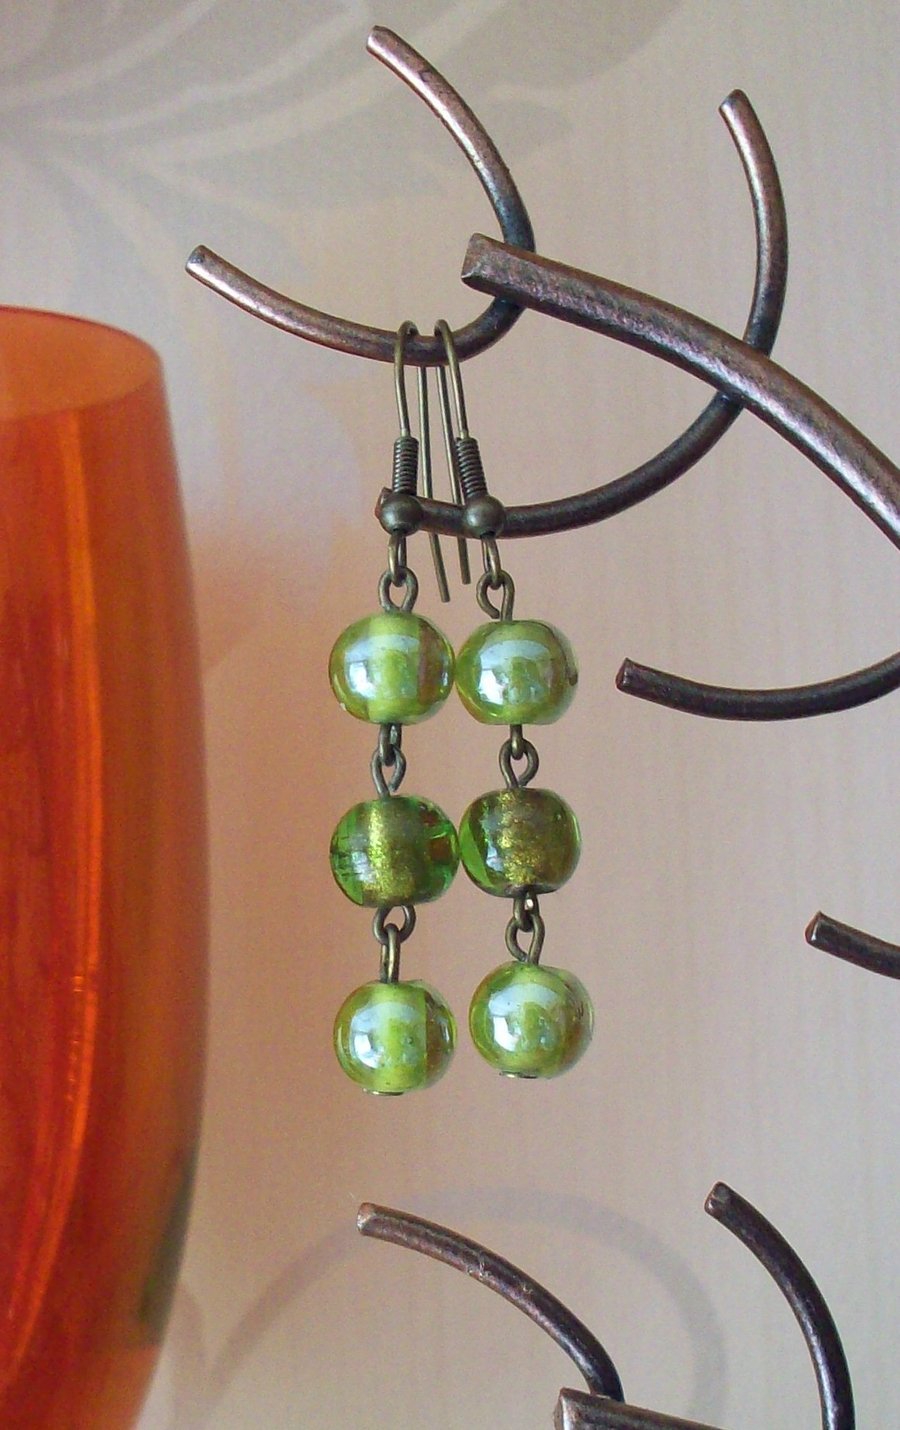 Green sparkle earrings